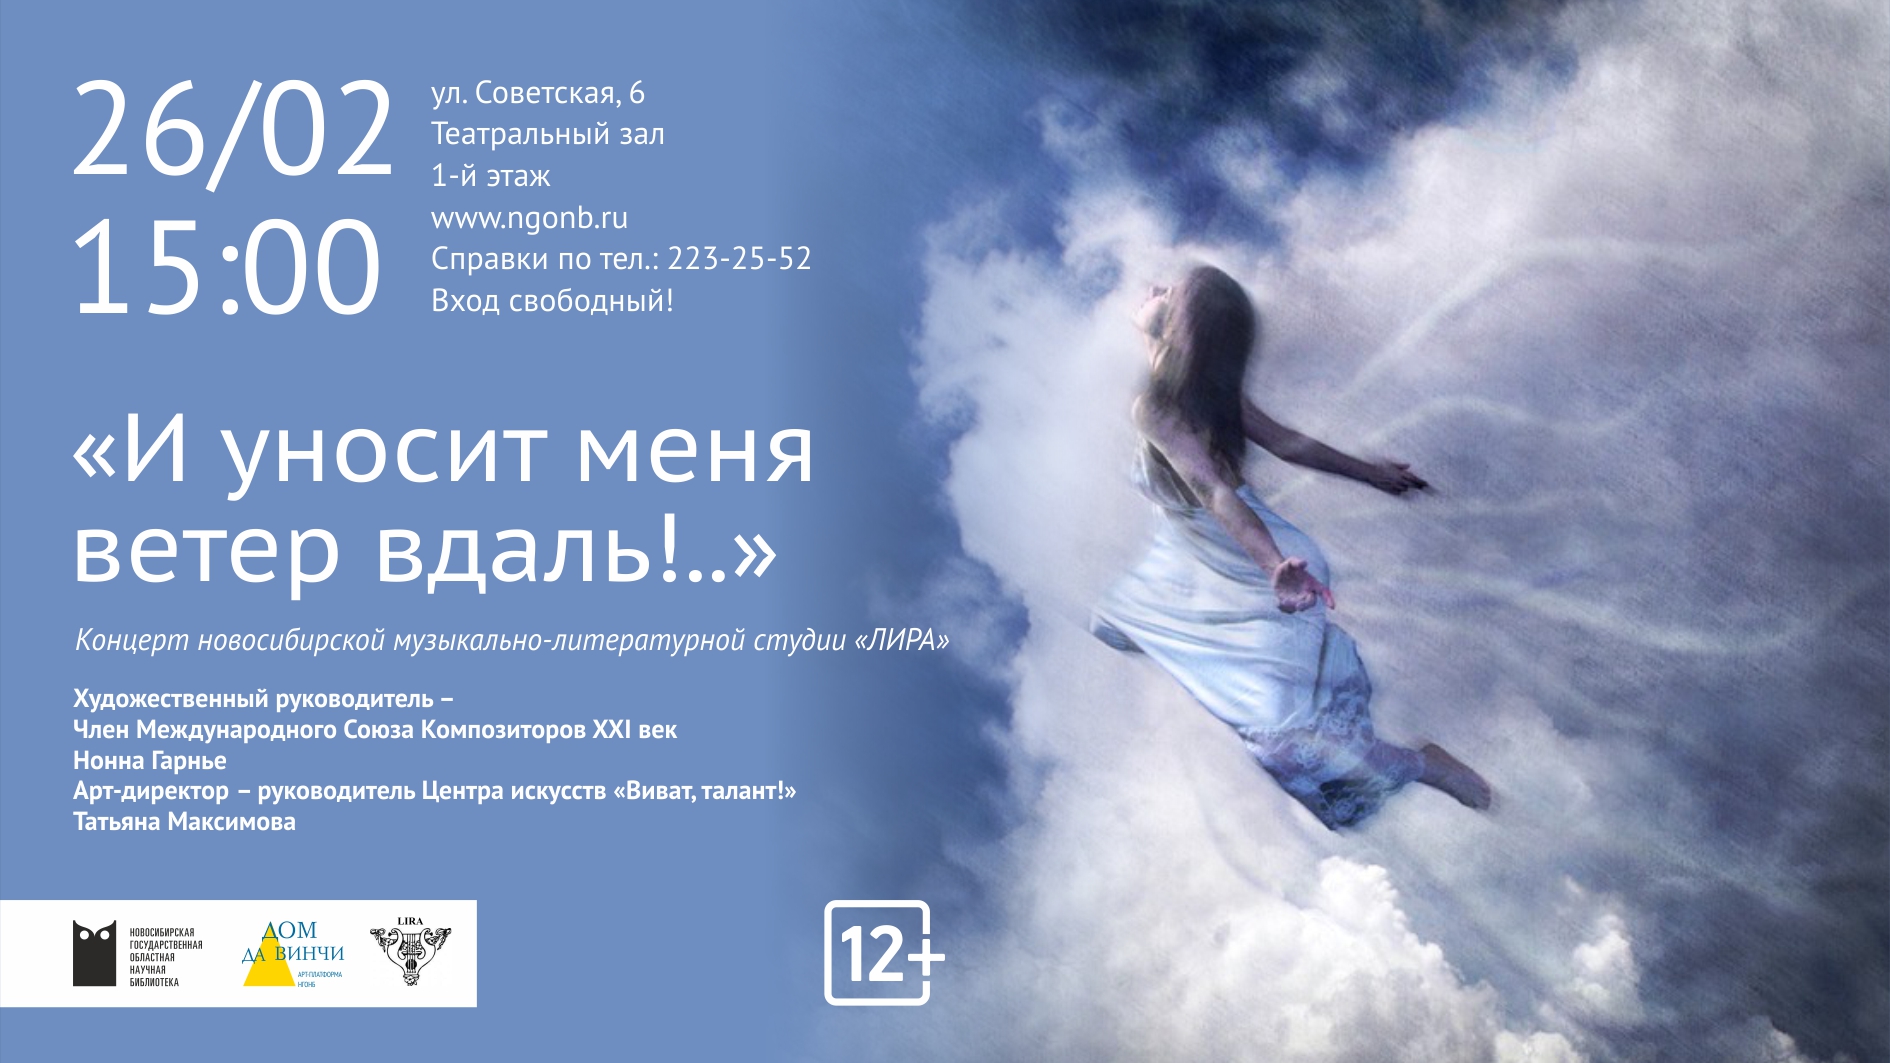 «И уносит меня ветер вдаль!..» концерт новосибирской музыкально-литературной студии «ЛИРА».